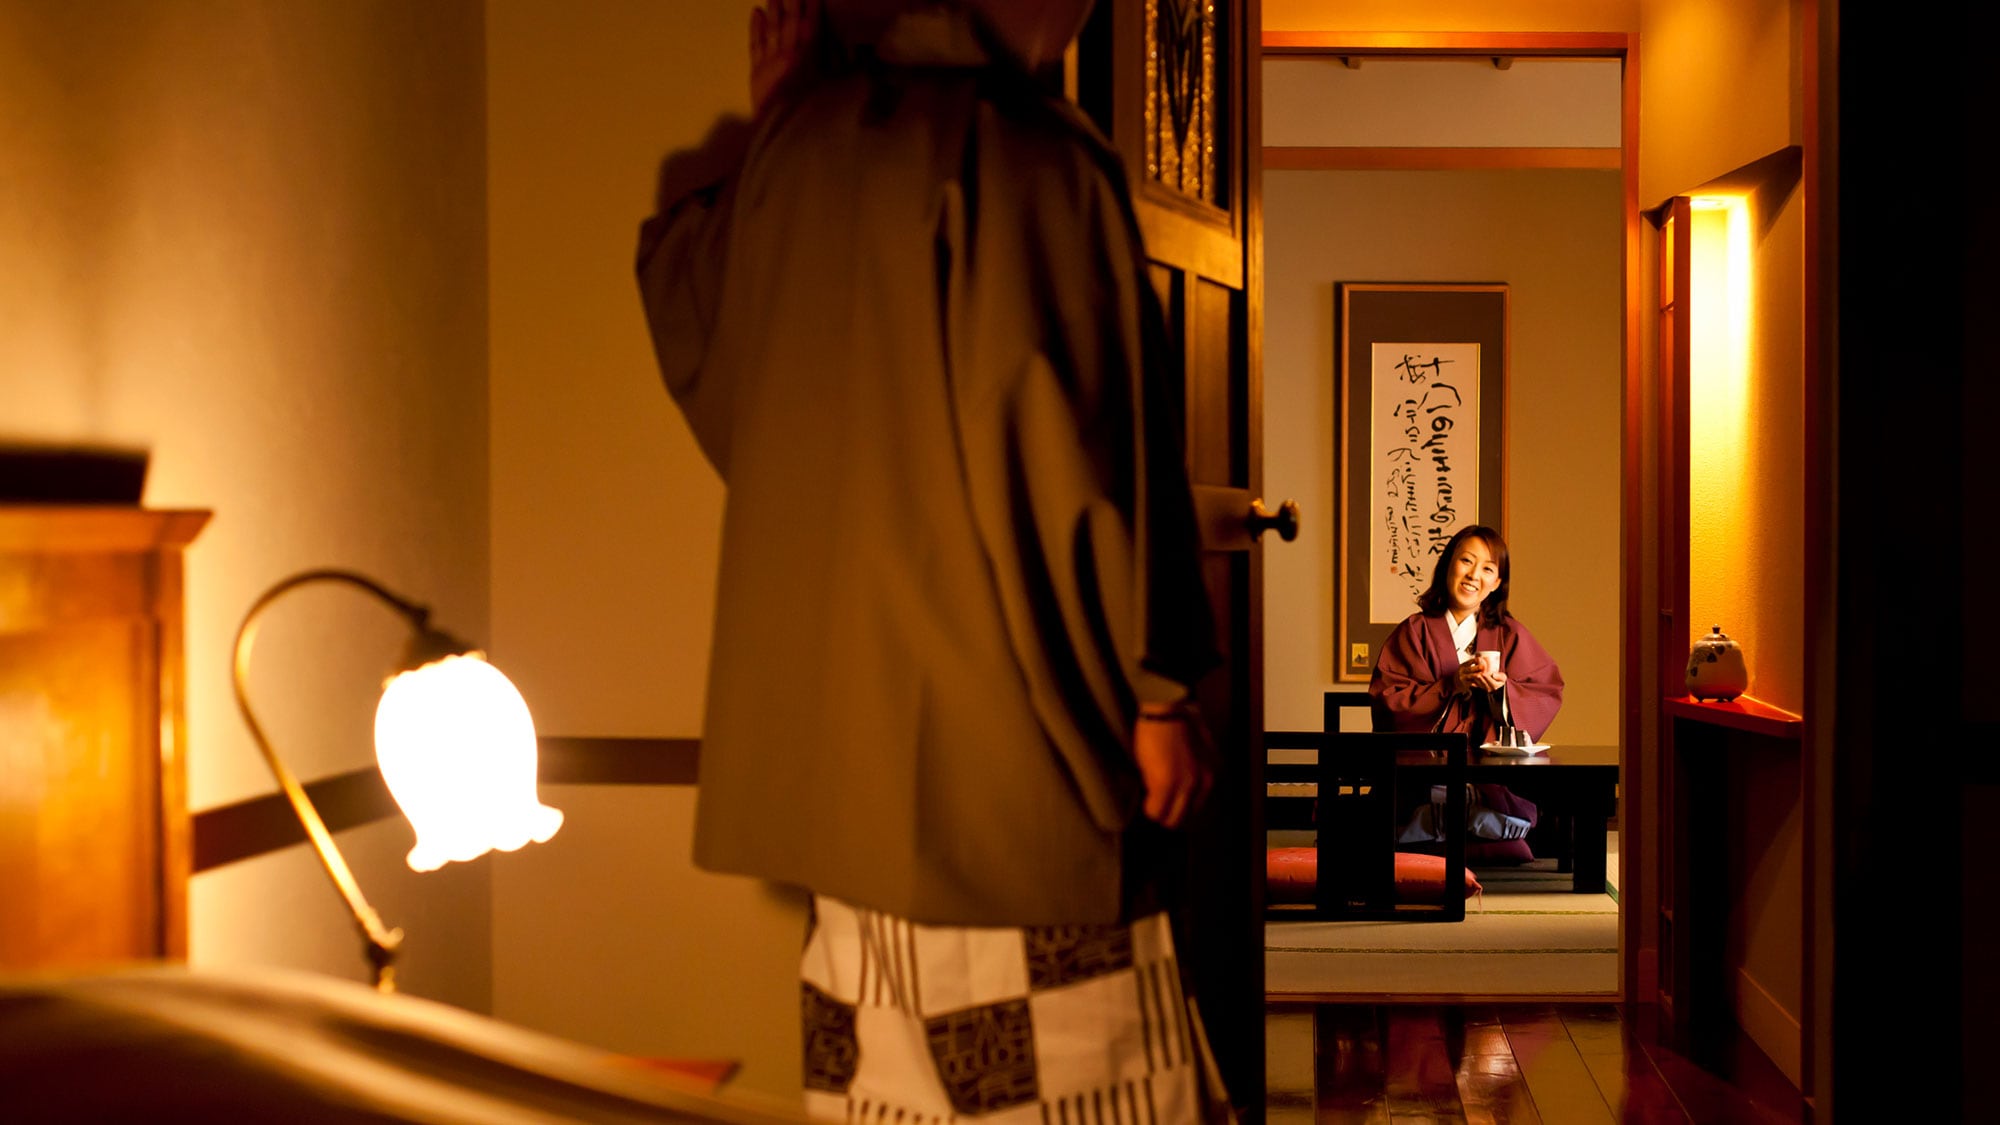 【WAMODERN 일본식 방】레트로인 램프나 스테인드 글라스가 그리움을 연출합니다.